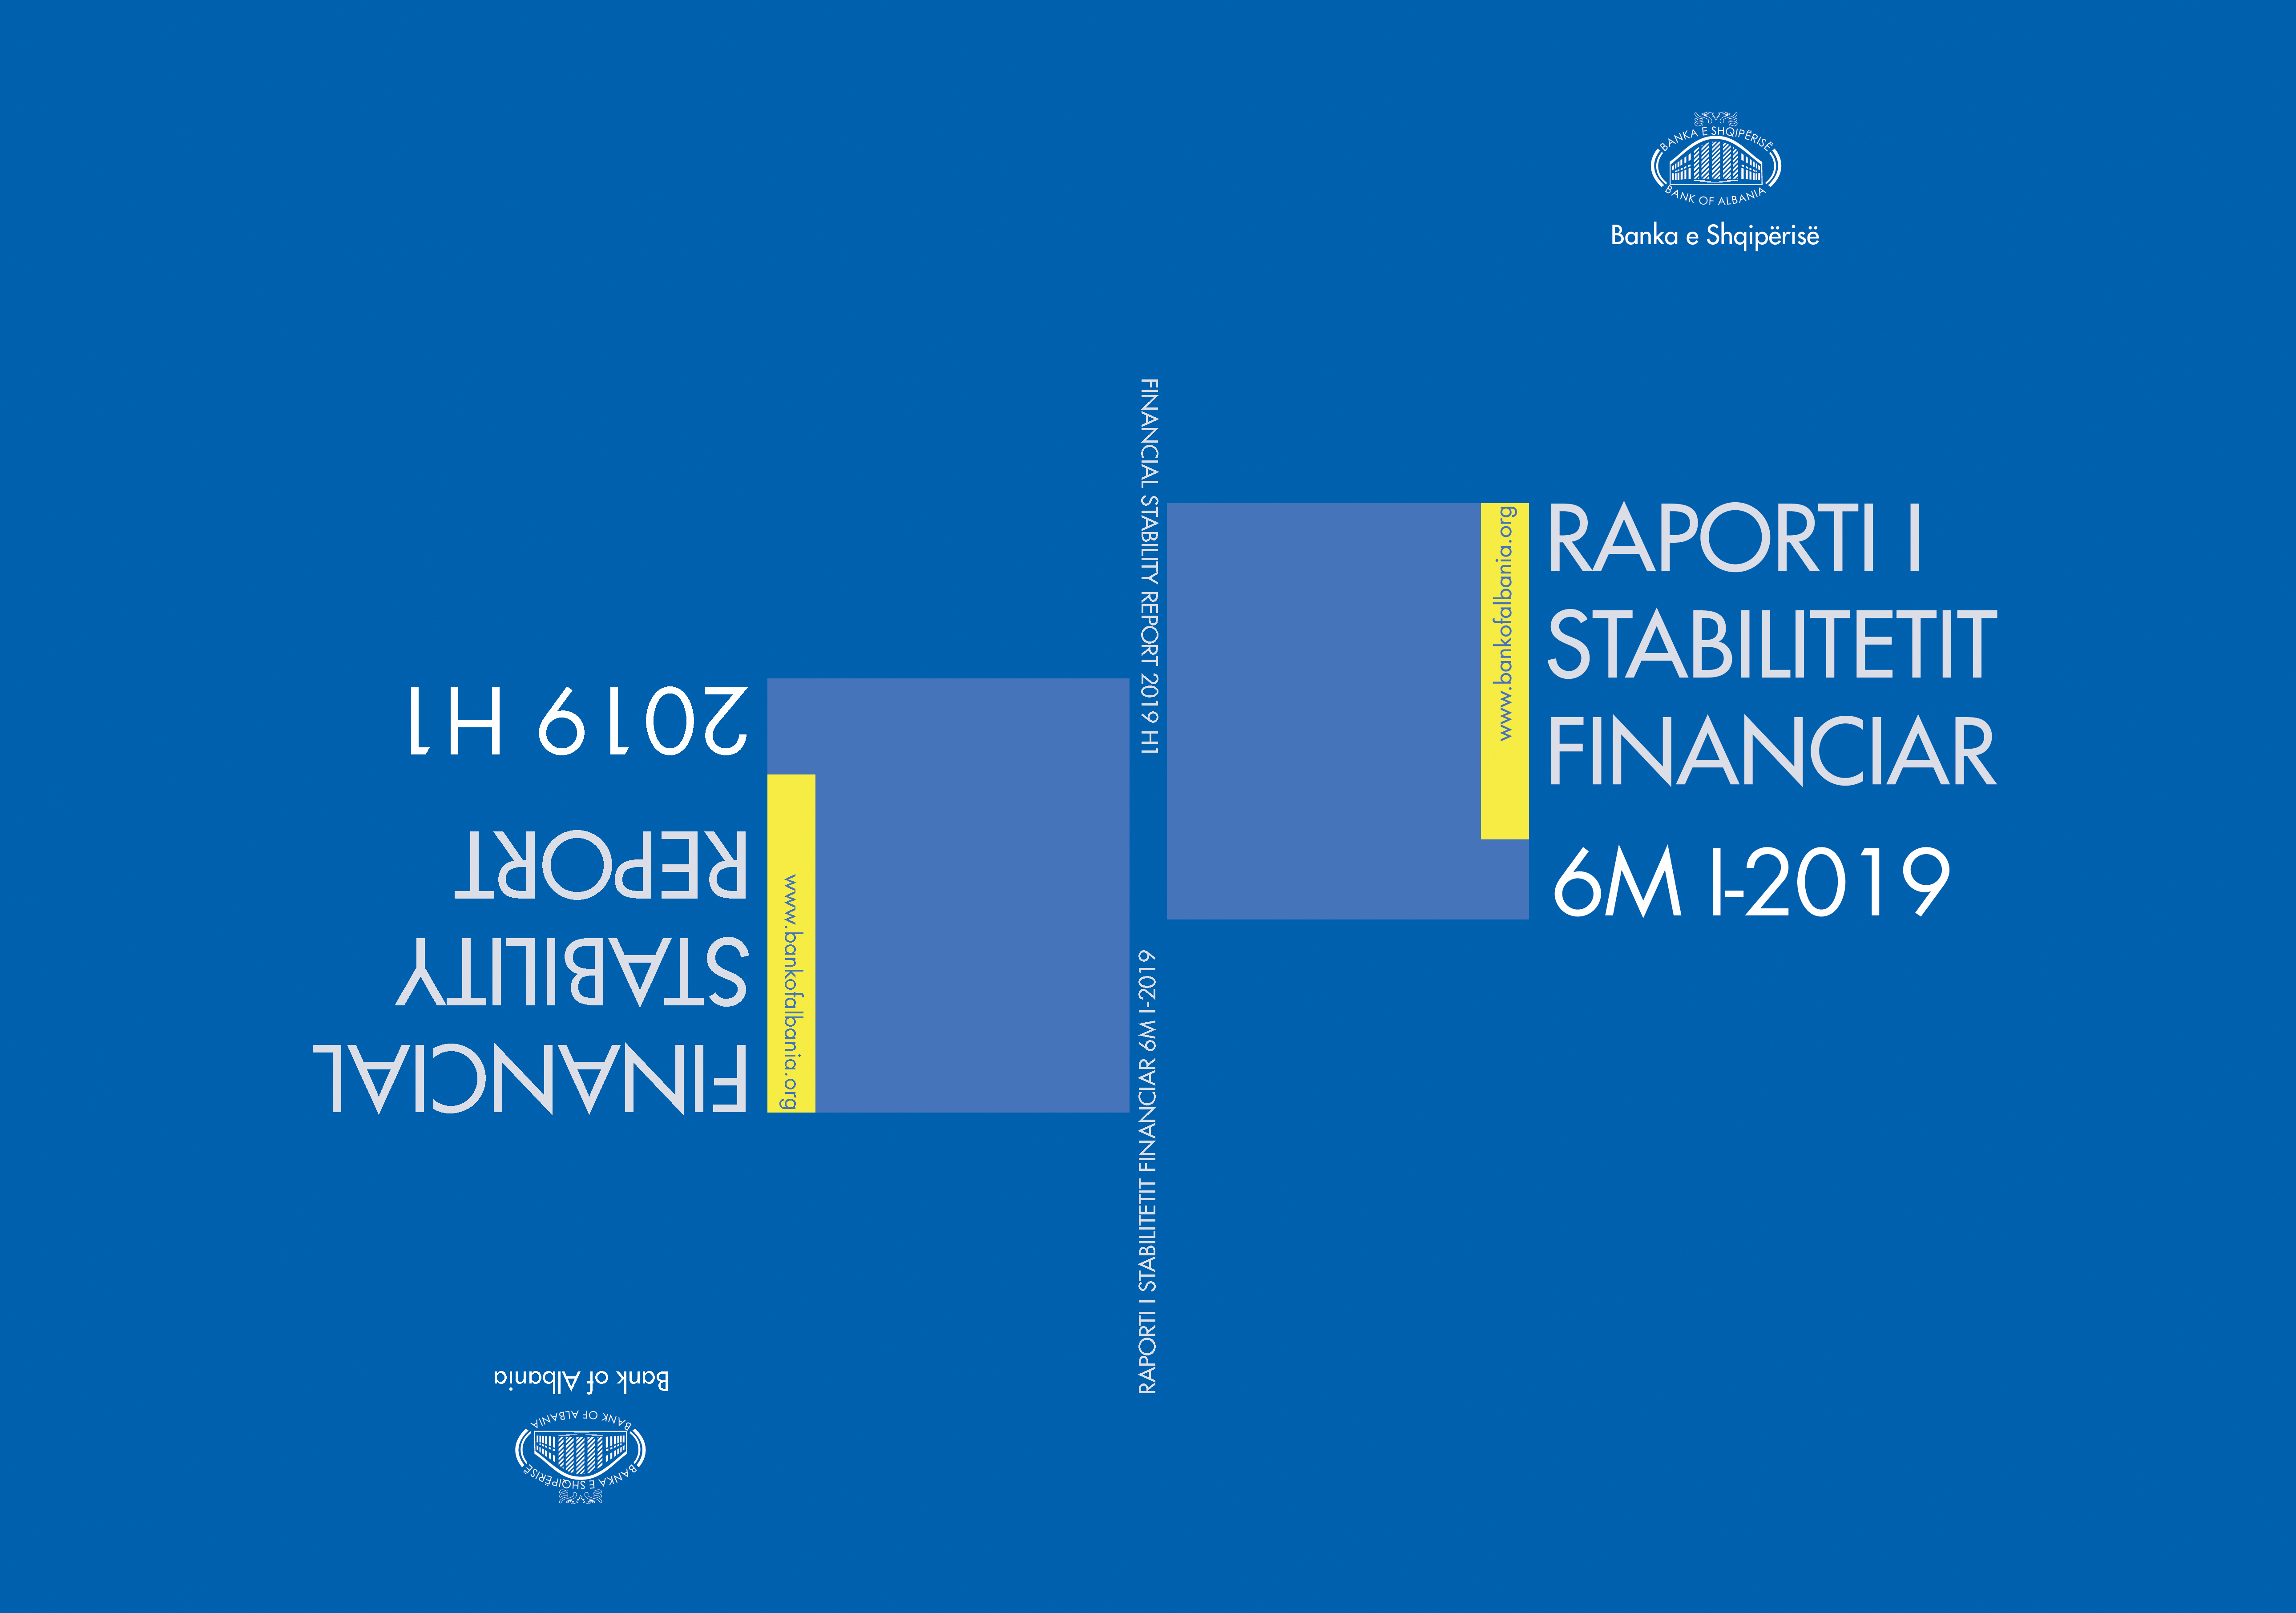 Raporti i Stabilitetit Financiar për gjashtëmujorin e parë të vitit 2019